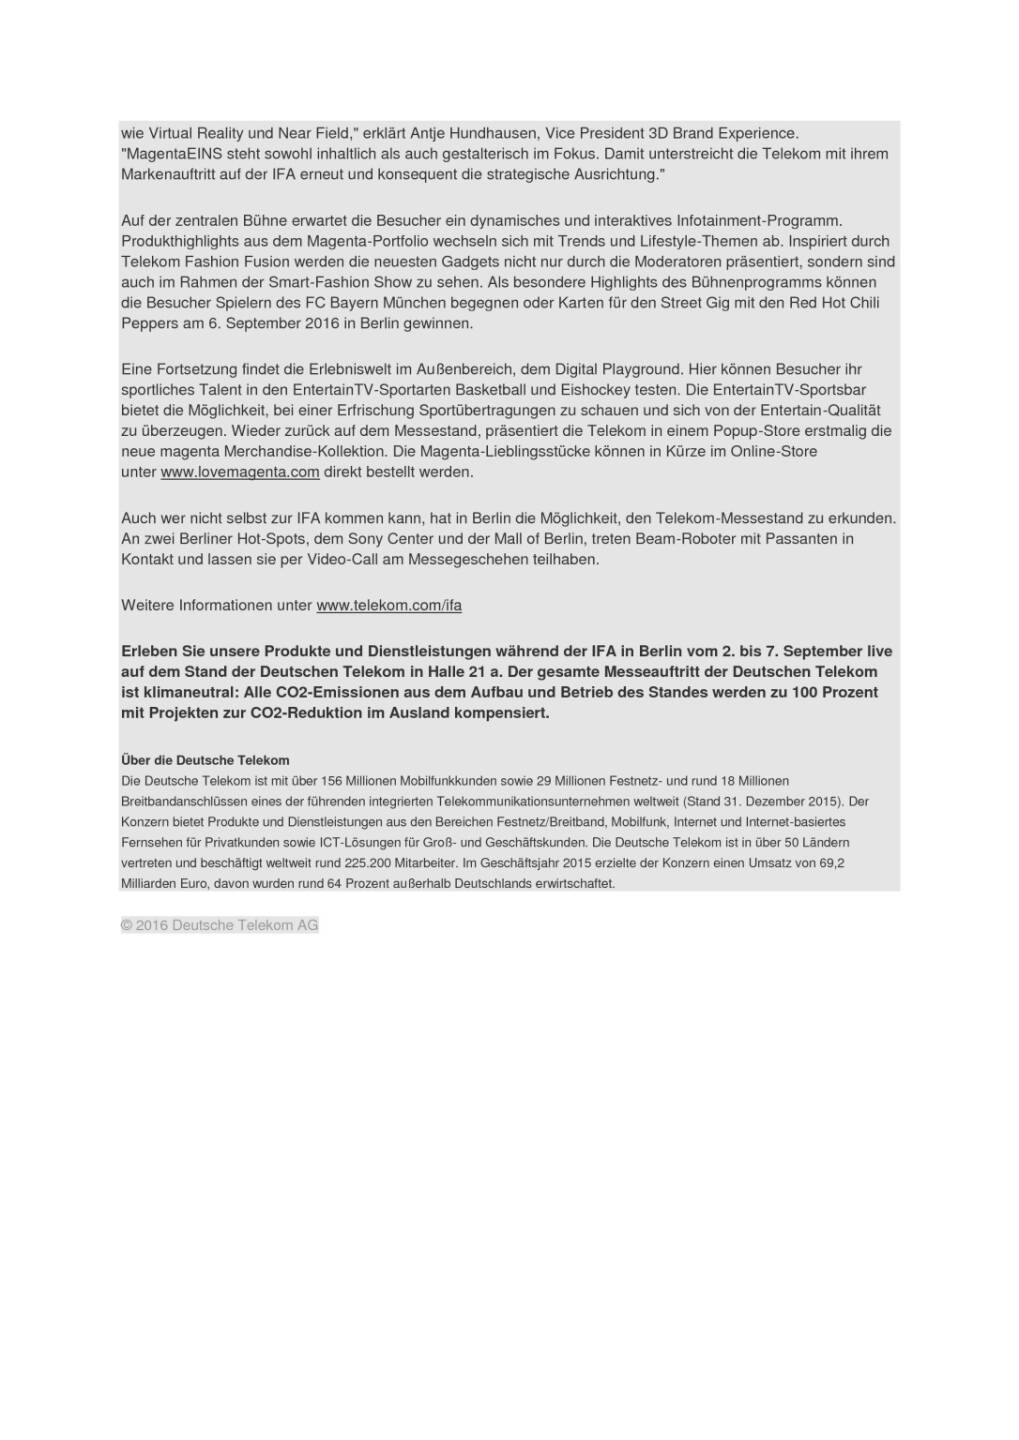 Deutsche Telekom: IFA 2016, Seite 2/2, komplettes Dokument unter http://boerse-social.com/static/uploads/file_1684_deutsche_telekom_ifa_2016.pdf